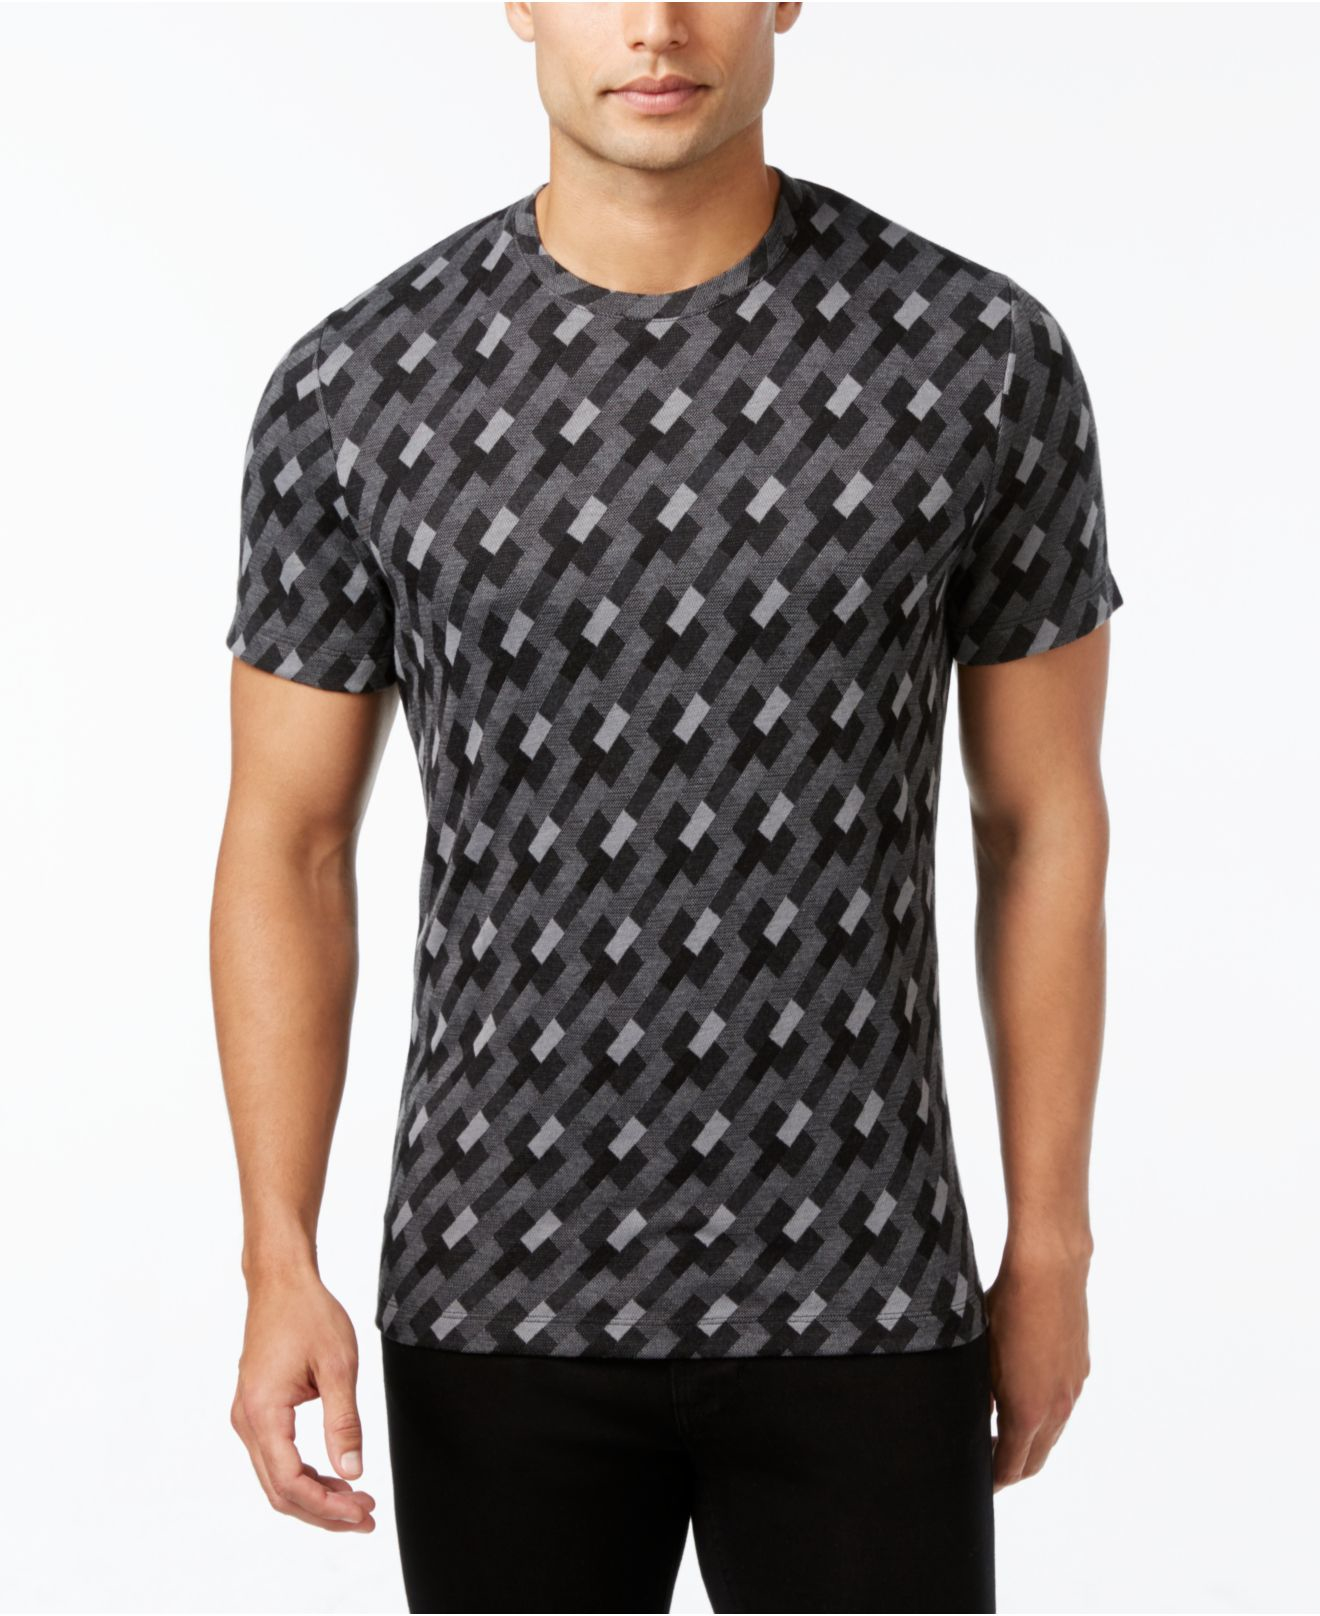 Lyst - Alfani Men's Jacquard Geometric T-shirt in Black for Men